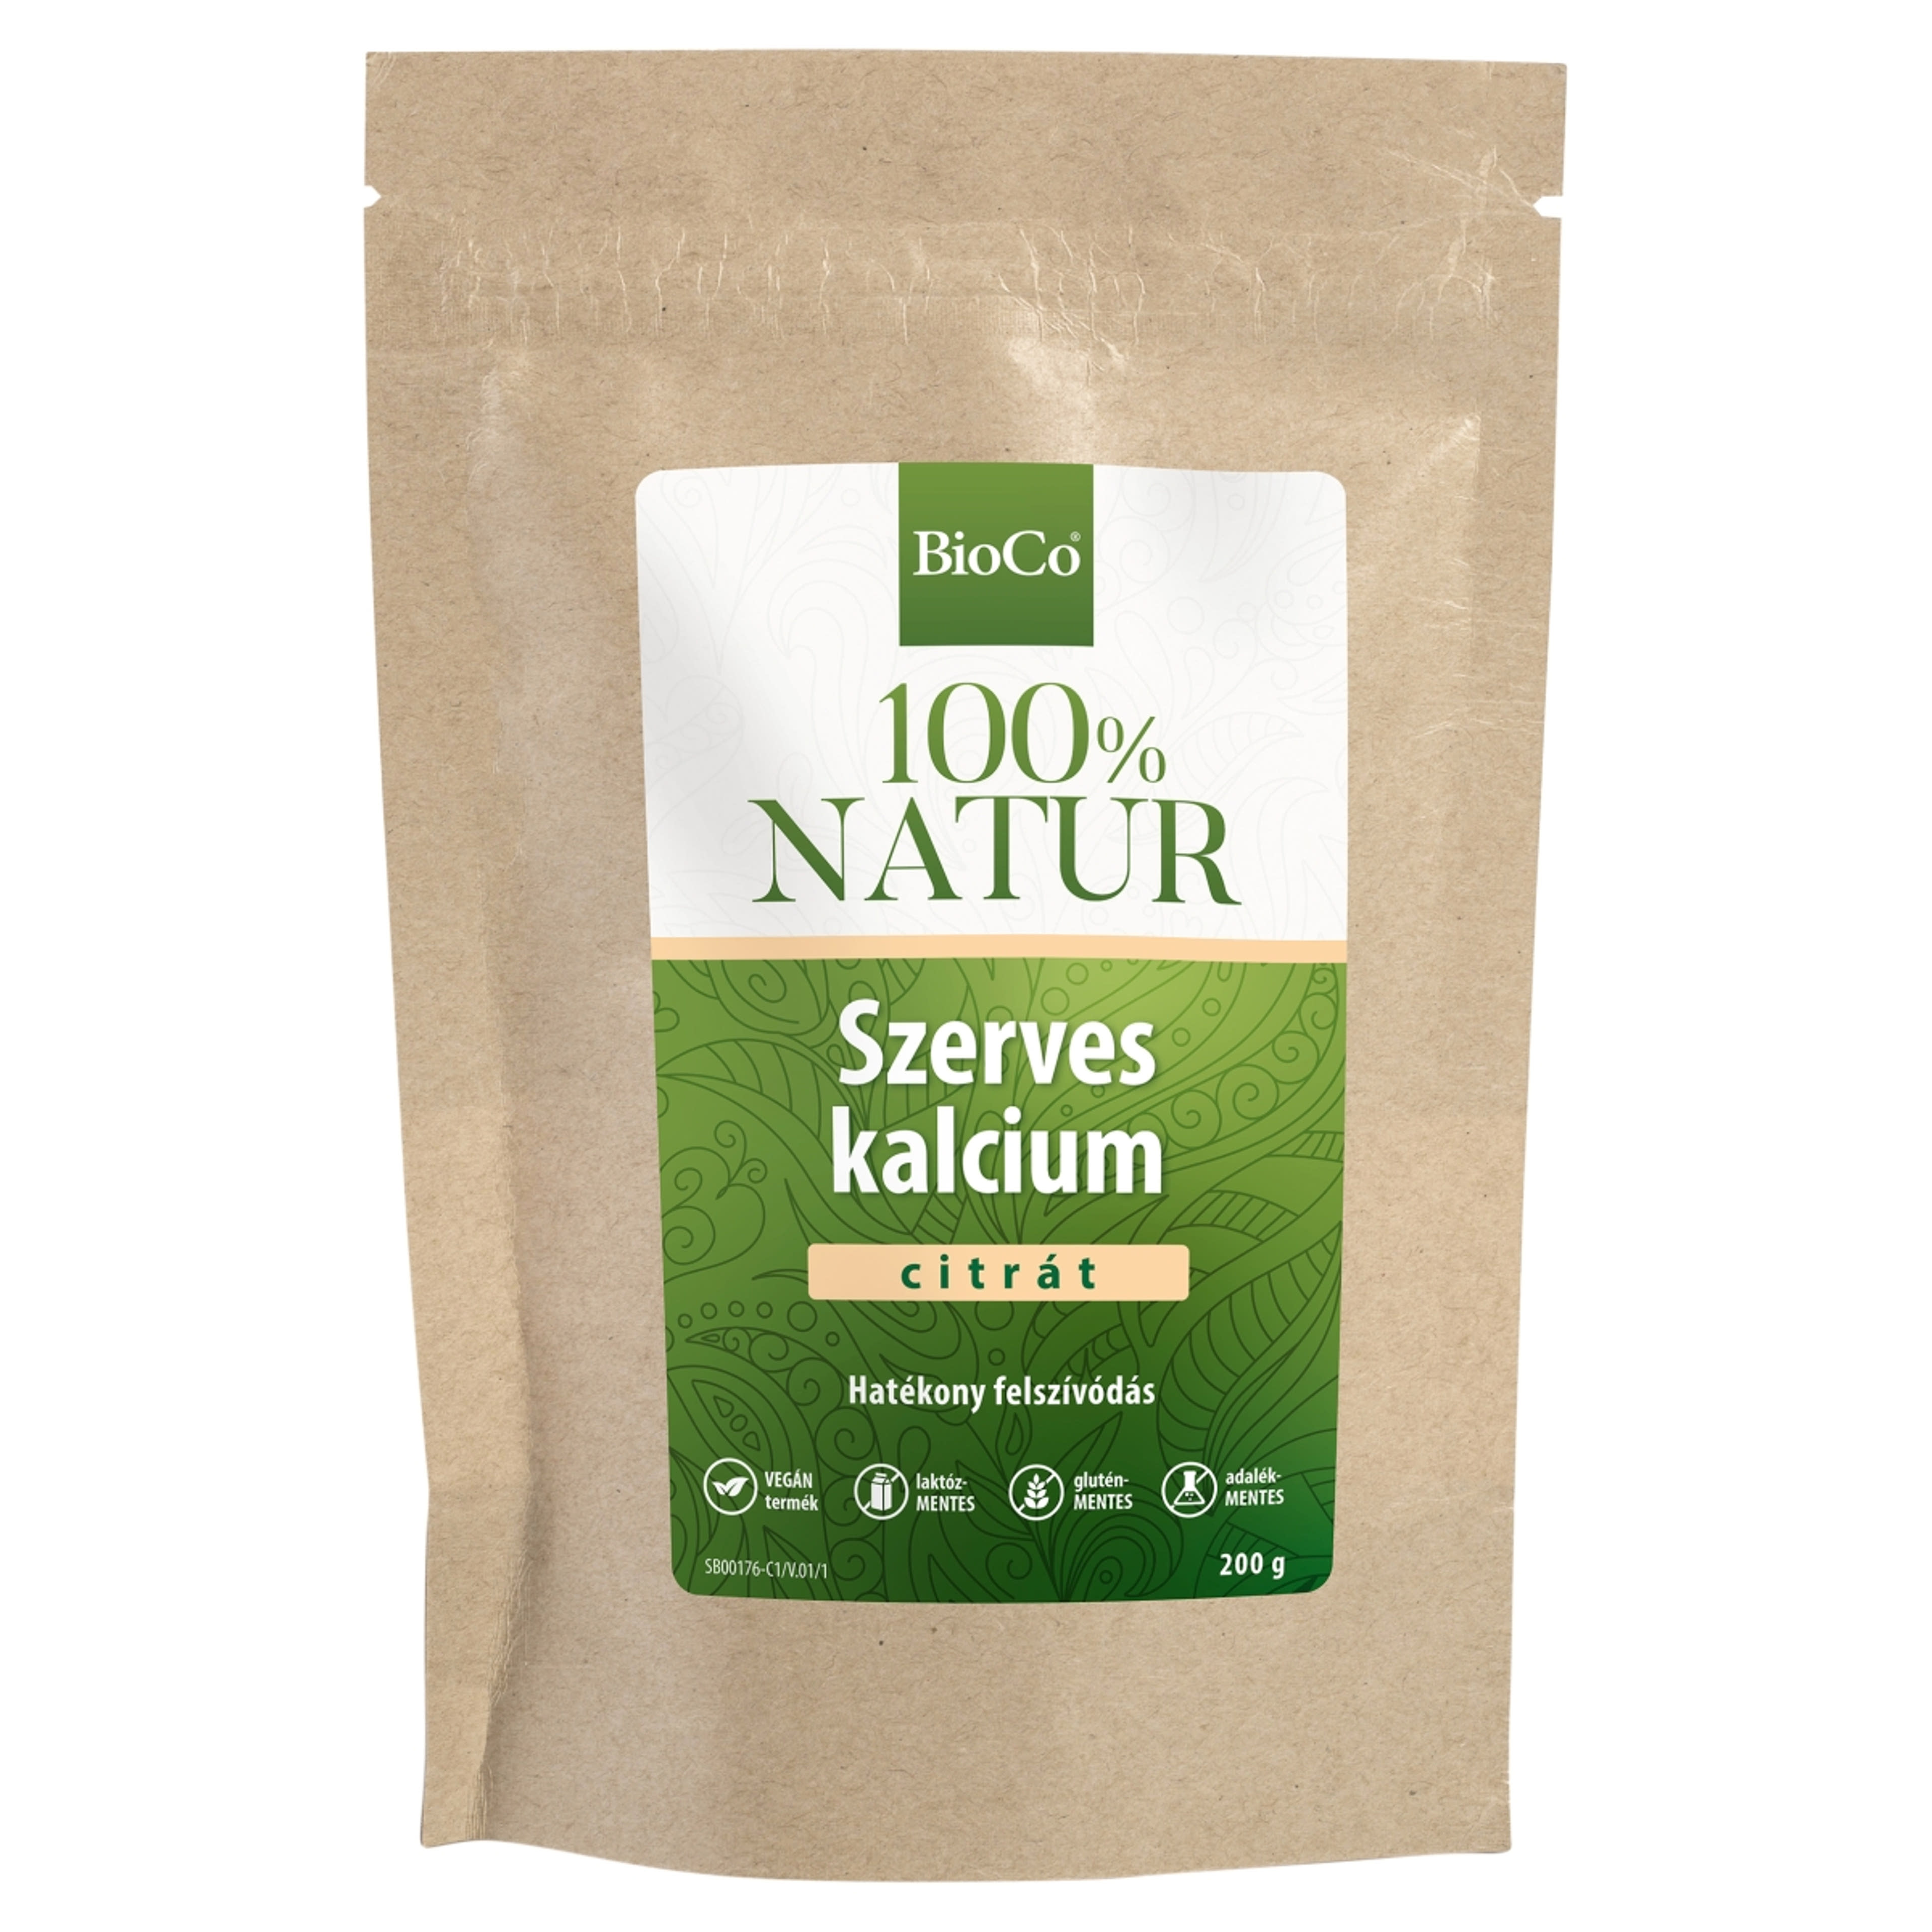 BioCo 100% Natur szerves kalcium-citrát tasakos por - 200 g